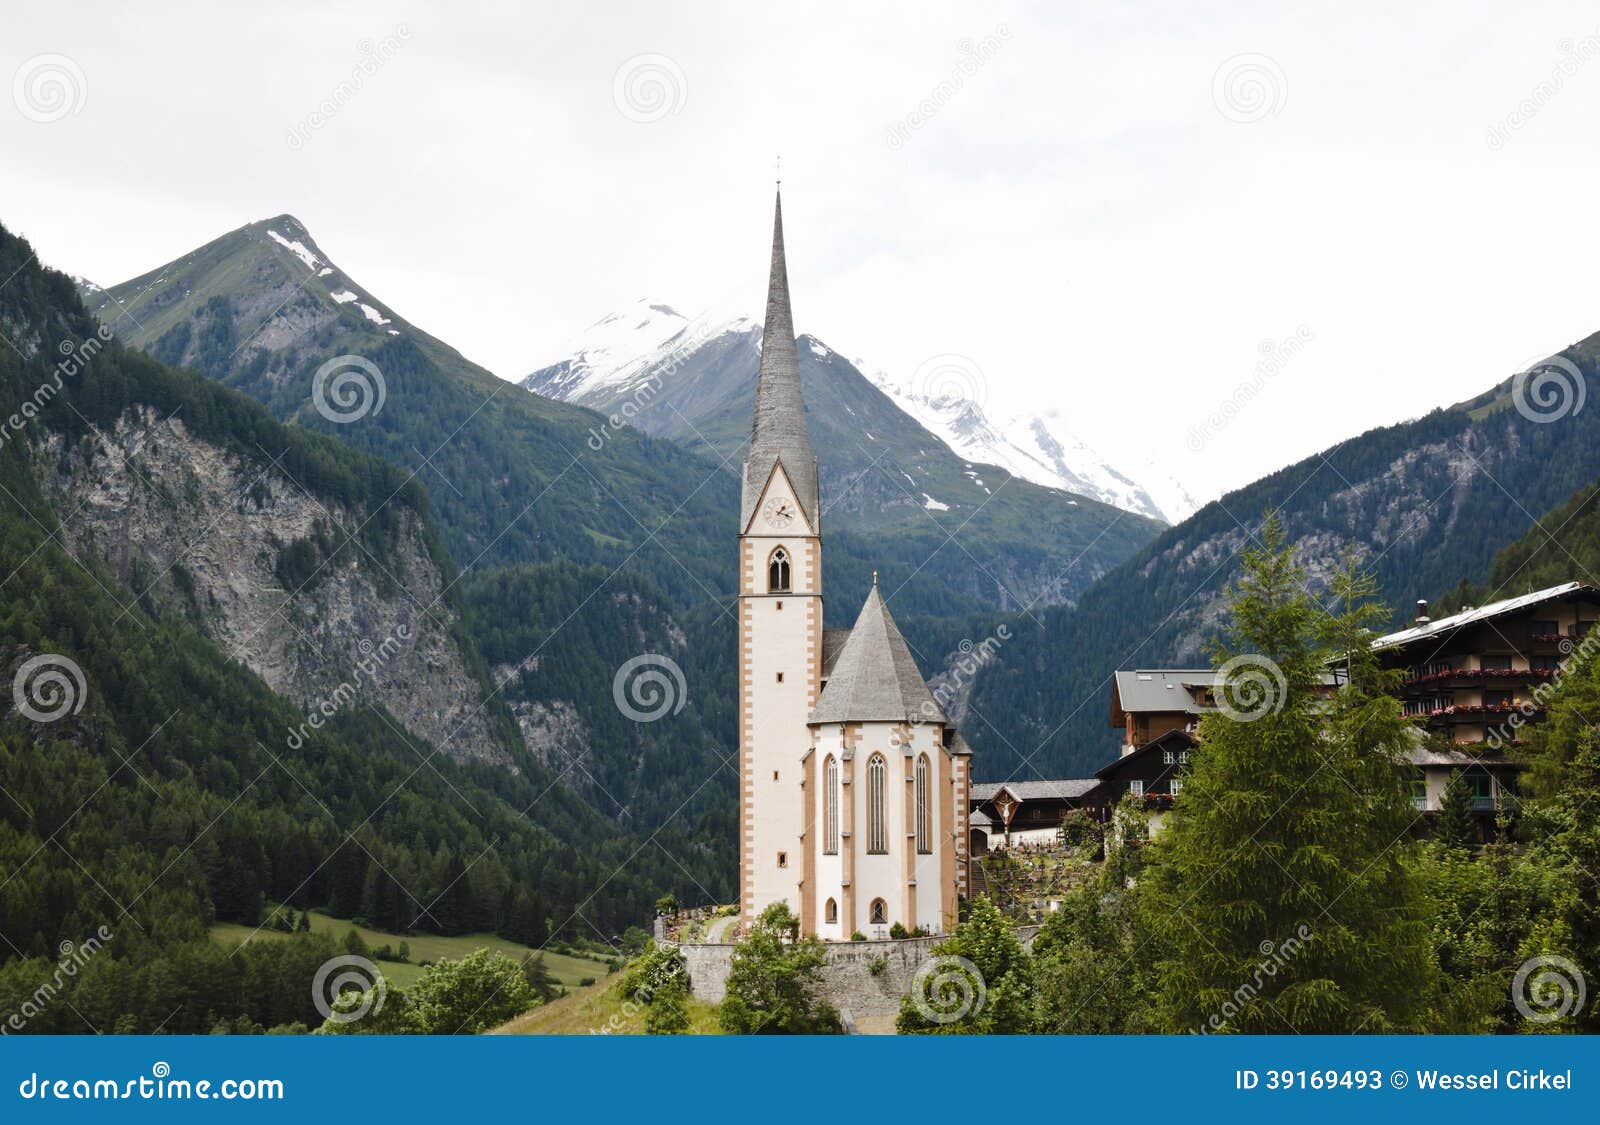 saint vincent pilgrimage church, heiligenblut